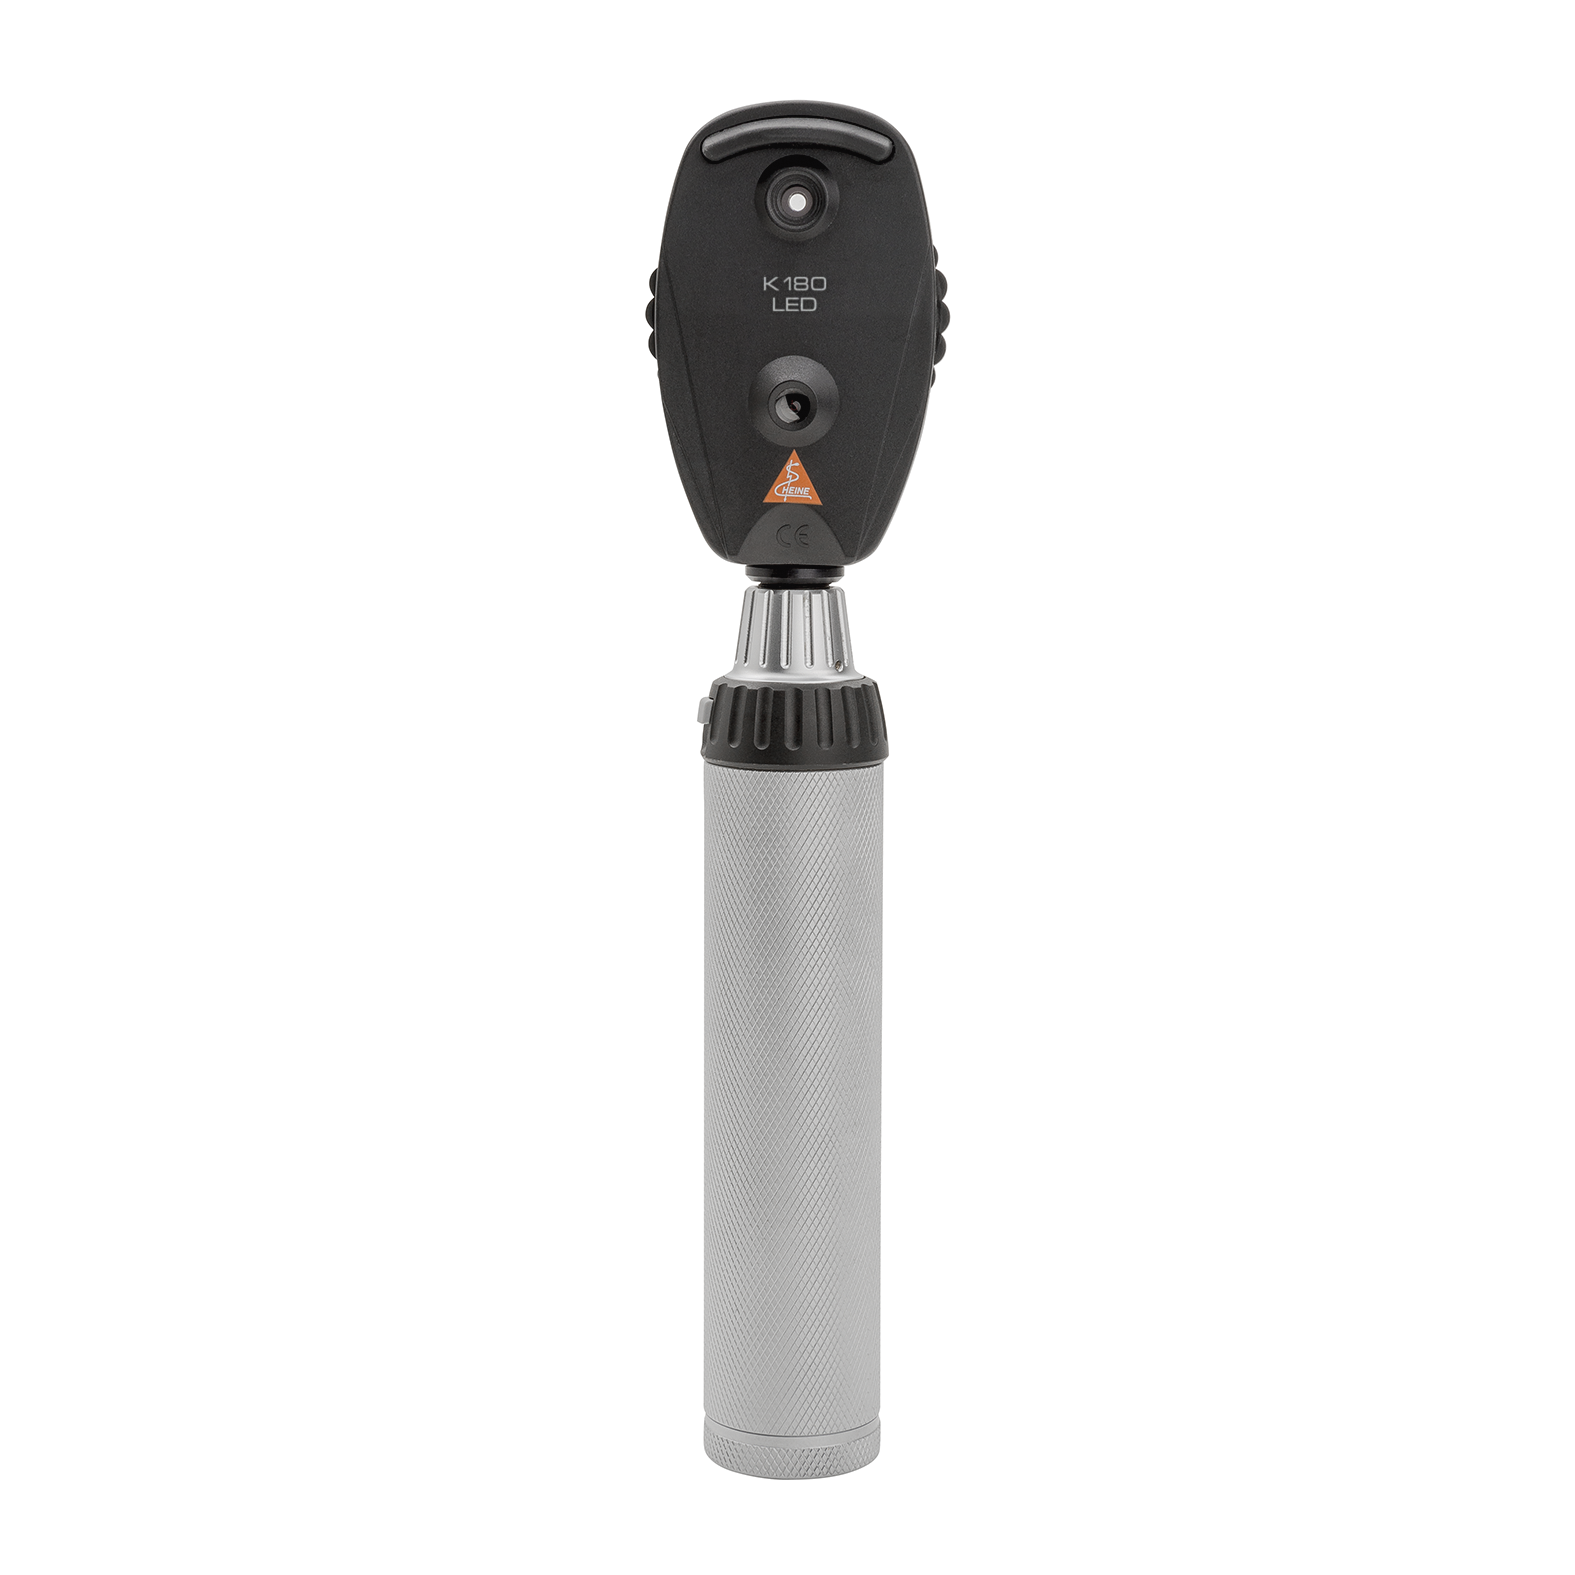 Ophtalmoscope HEINE K180 LED, en version standard avec molette d'ouverture 1, étui souple, poignée rechargeable BETA4 USB avec cordon USB et bloc d'alimentation enfichable